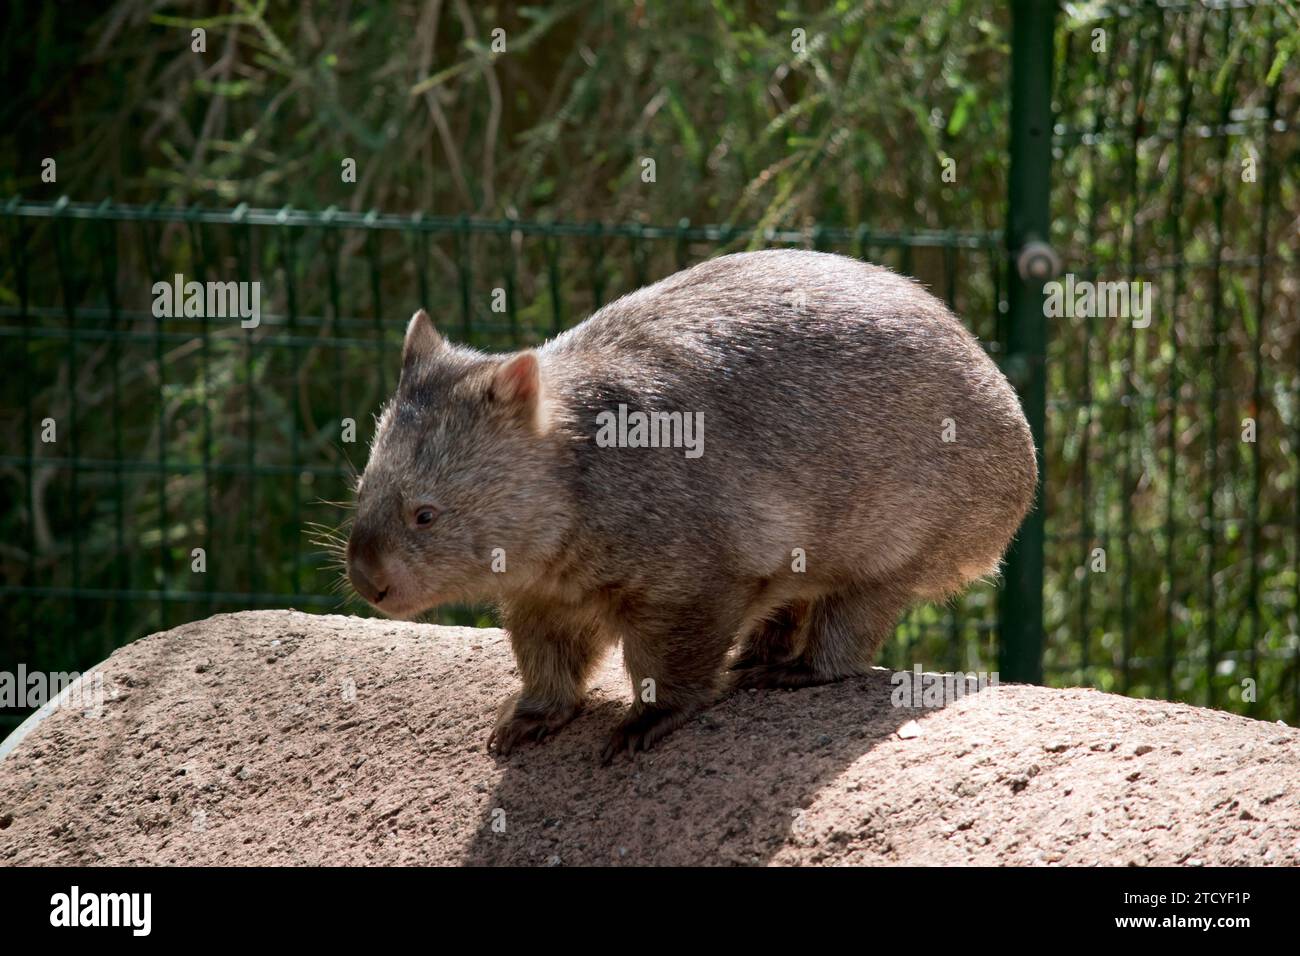 el wombat común tiene una cabeza grande y roma con ojos y orejas pequeños, y un cuello corto y musculoso. Sus afiladas garras y sus patas resistentes y potentes las hacen Foto de stock